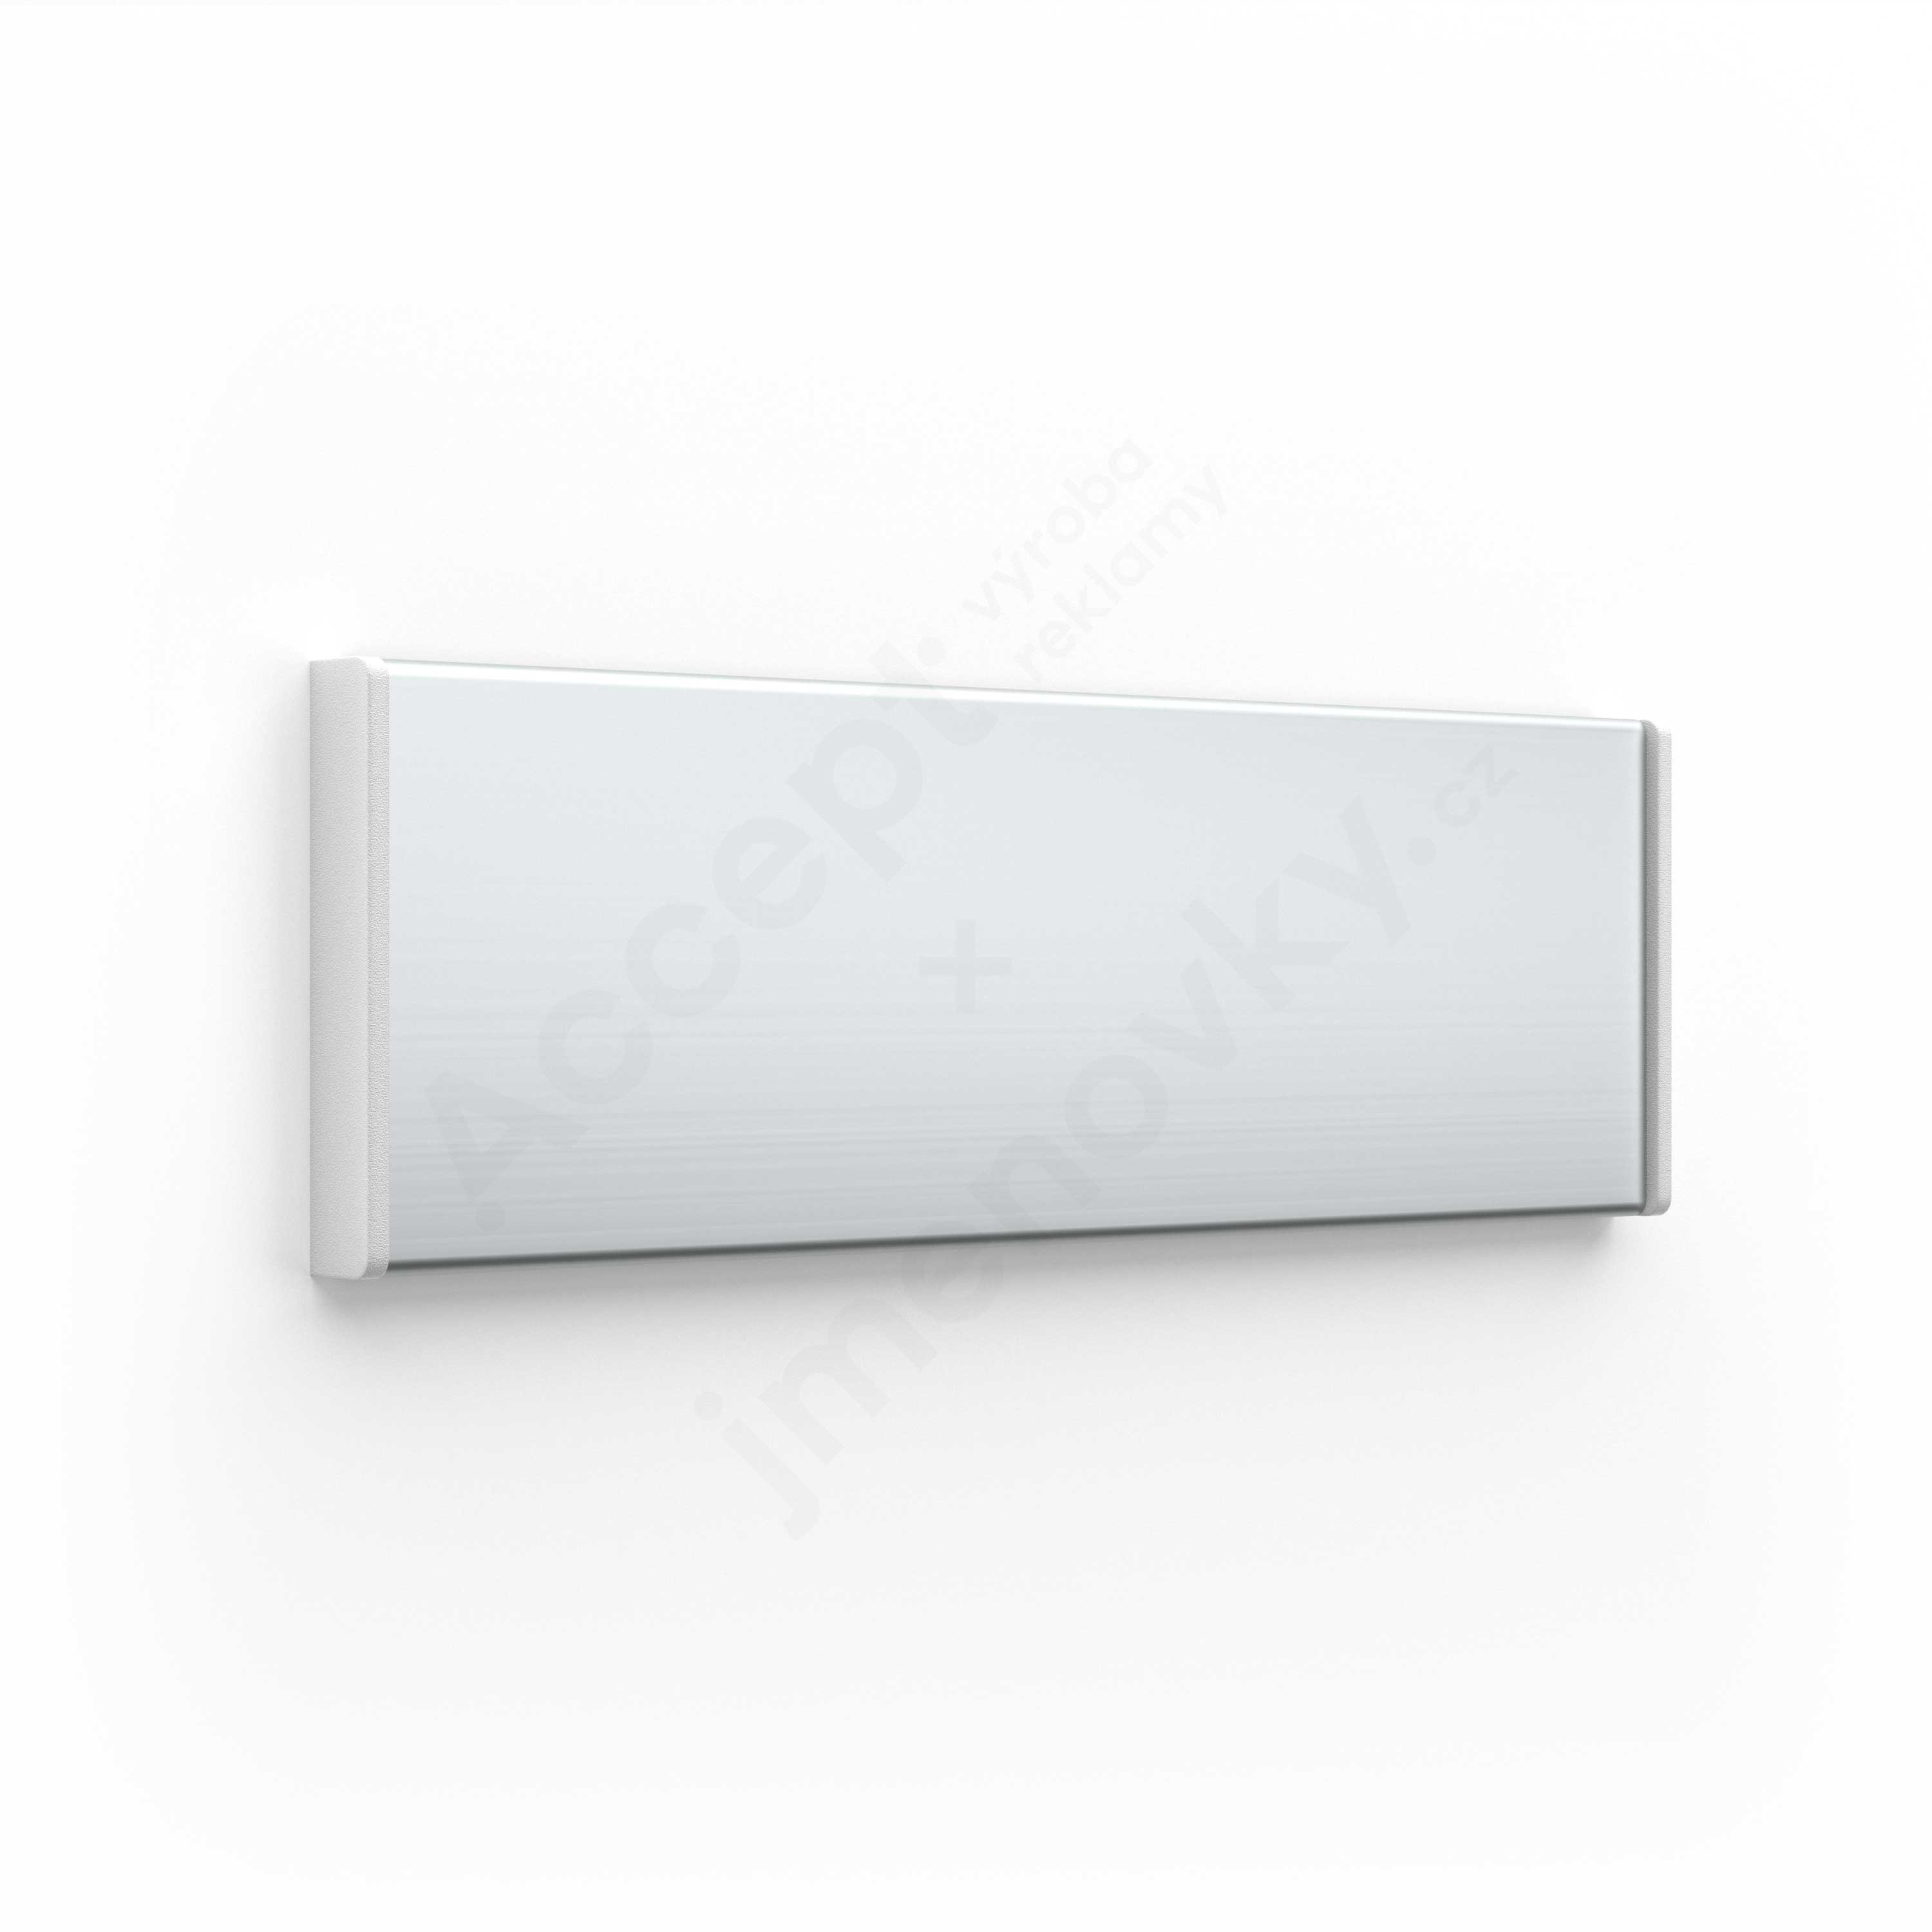 Dveřní tabulka ACS stříbrná se šedými bočnicemi (nezásuvný systém, 187 x 62 mm)